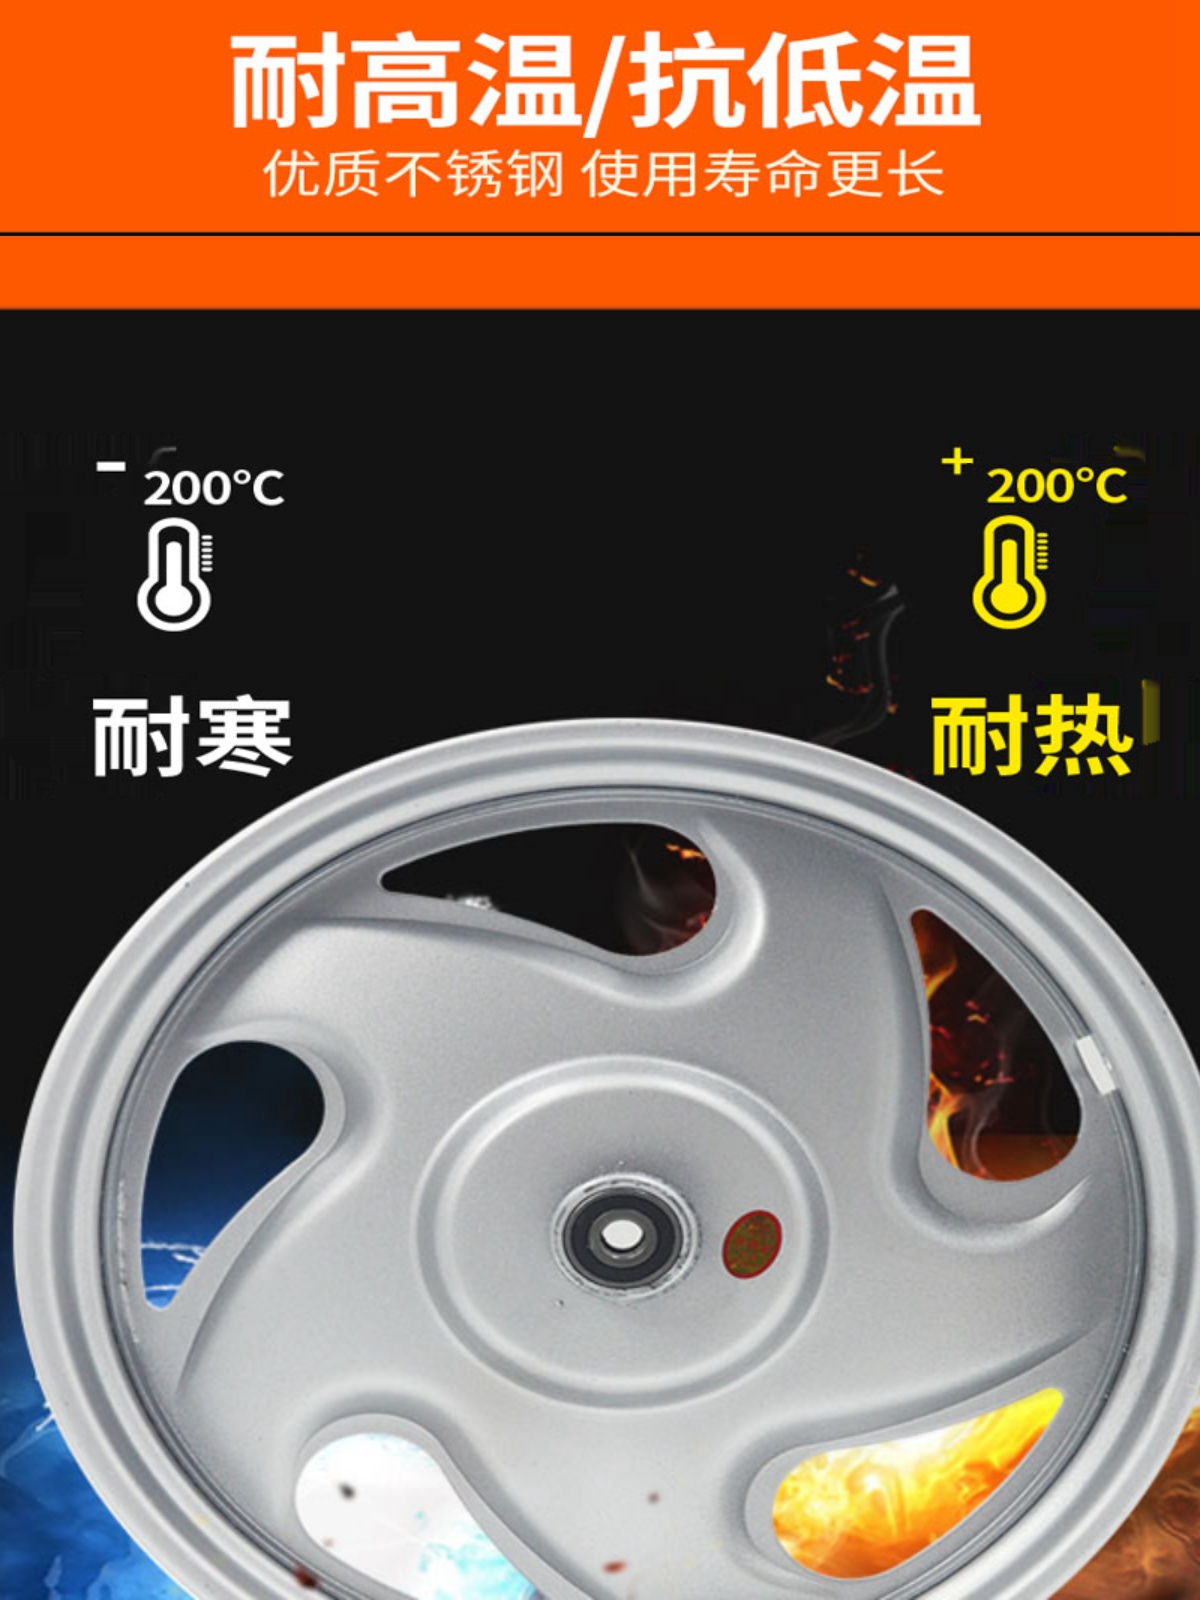 广州华昌三轮车钢圈轮毂四孔加厚双排375型号齐全小六眼通用款式